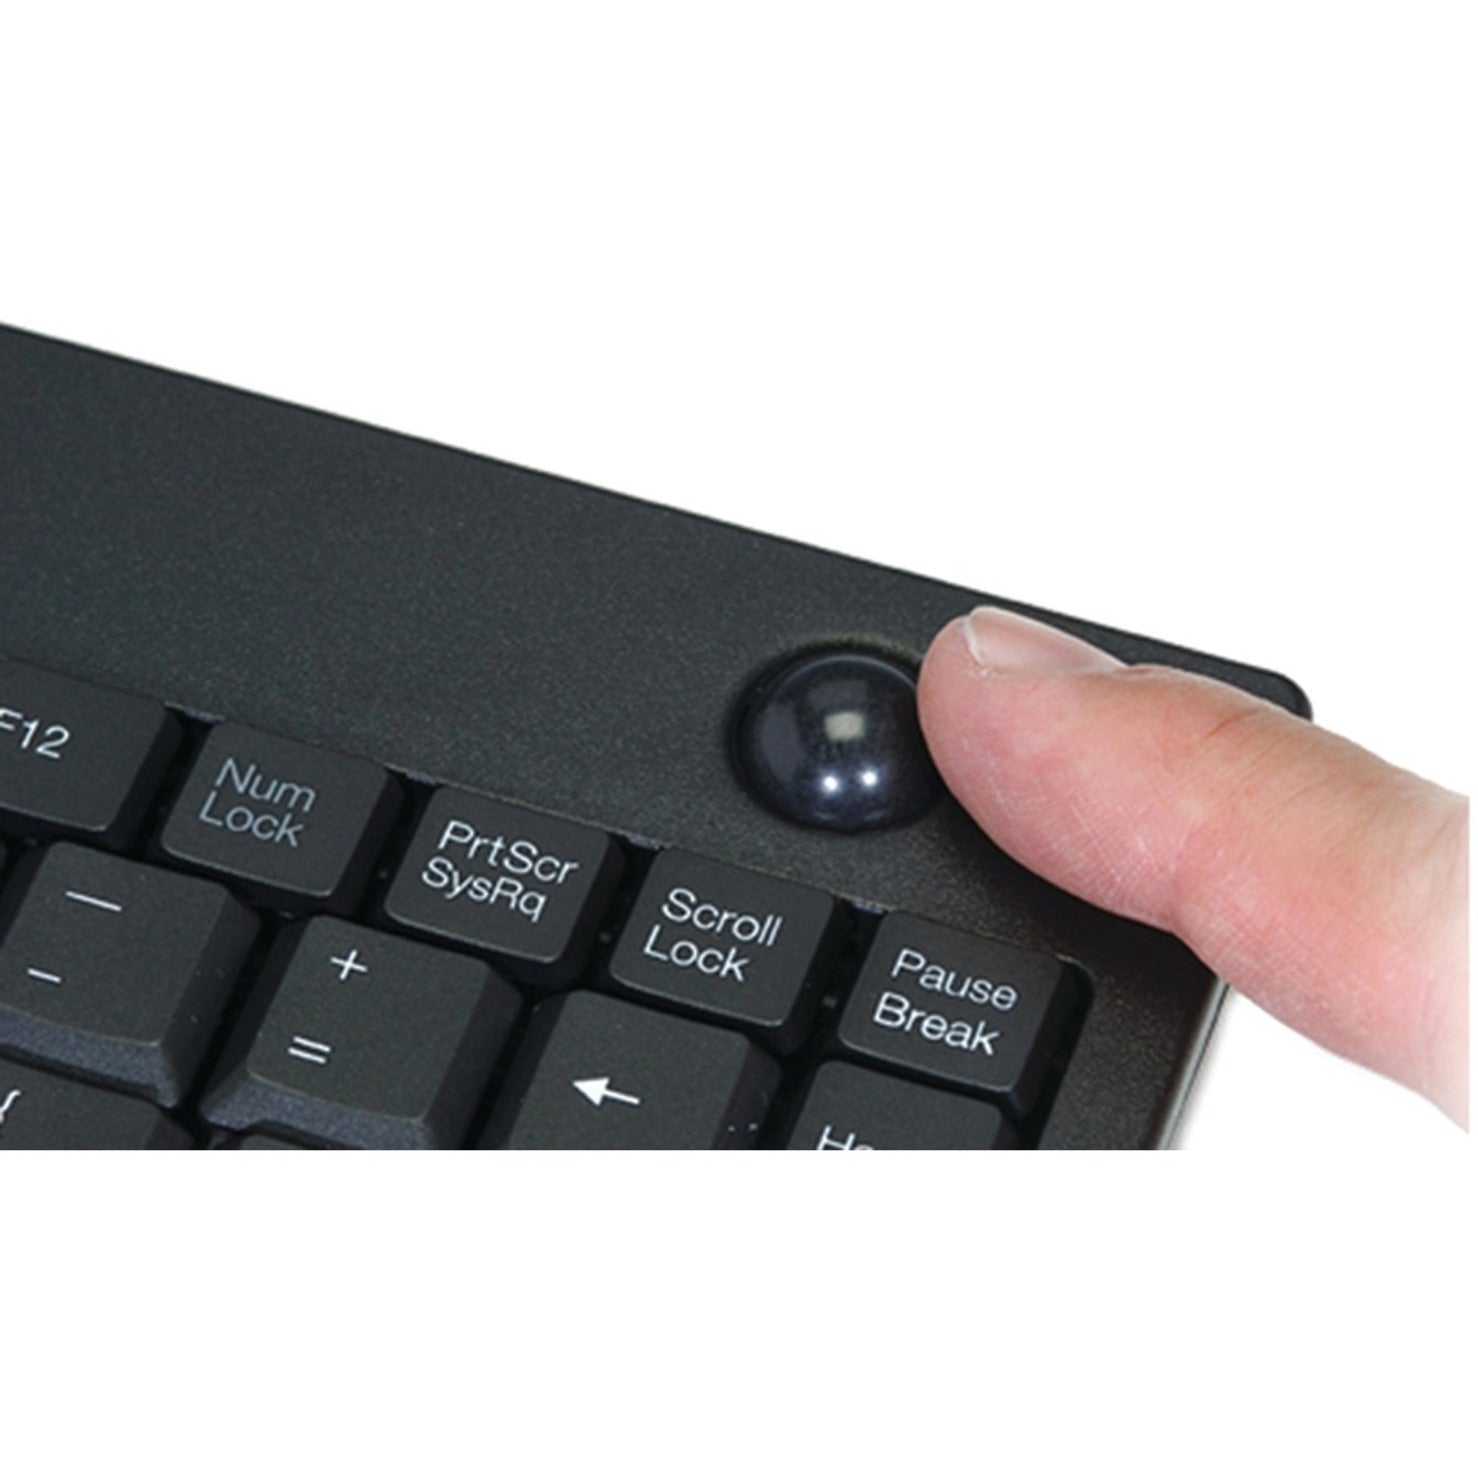 Adesso WKB-3100UB Wireless Mini Trackball Keyboard, USB, 87 Keys